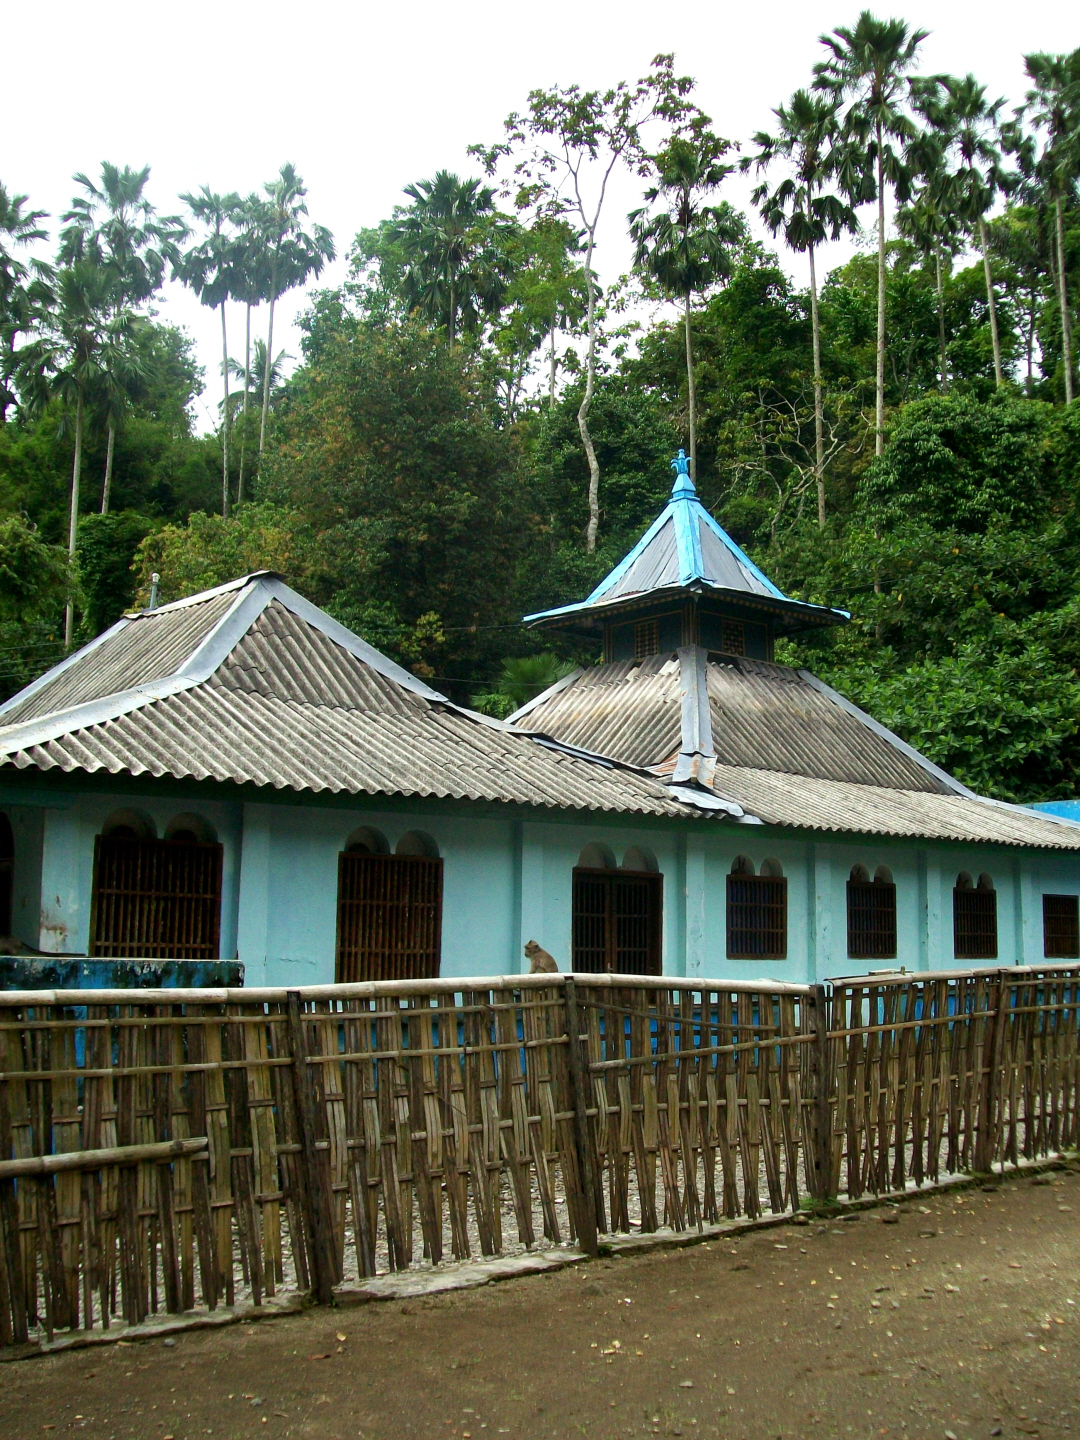 Masjid Saka Tuggal Cikakak, Banyumas, Central Java (1871)